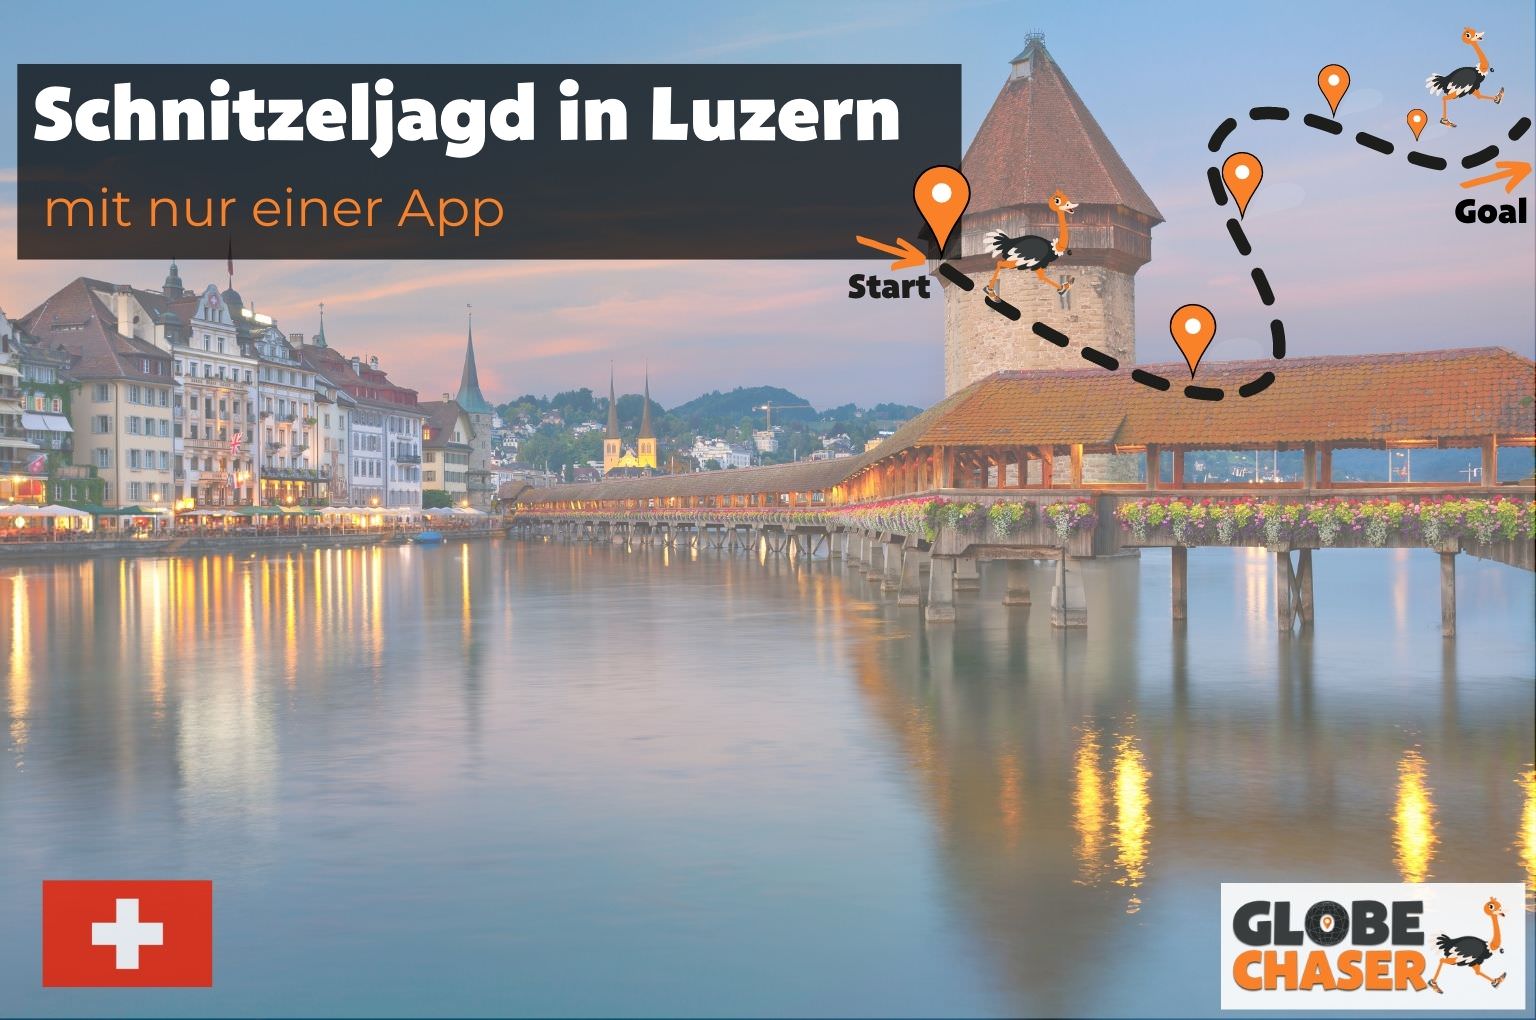 Schnitzeljagd in Luzern mit App - Globe Chaser Erlebnisse Schweiz